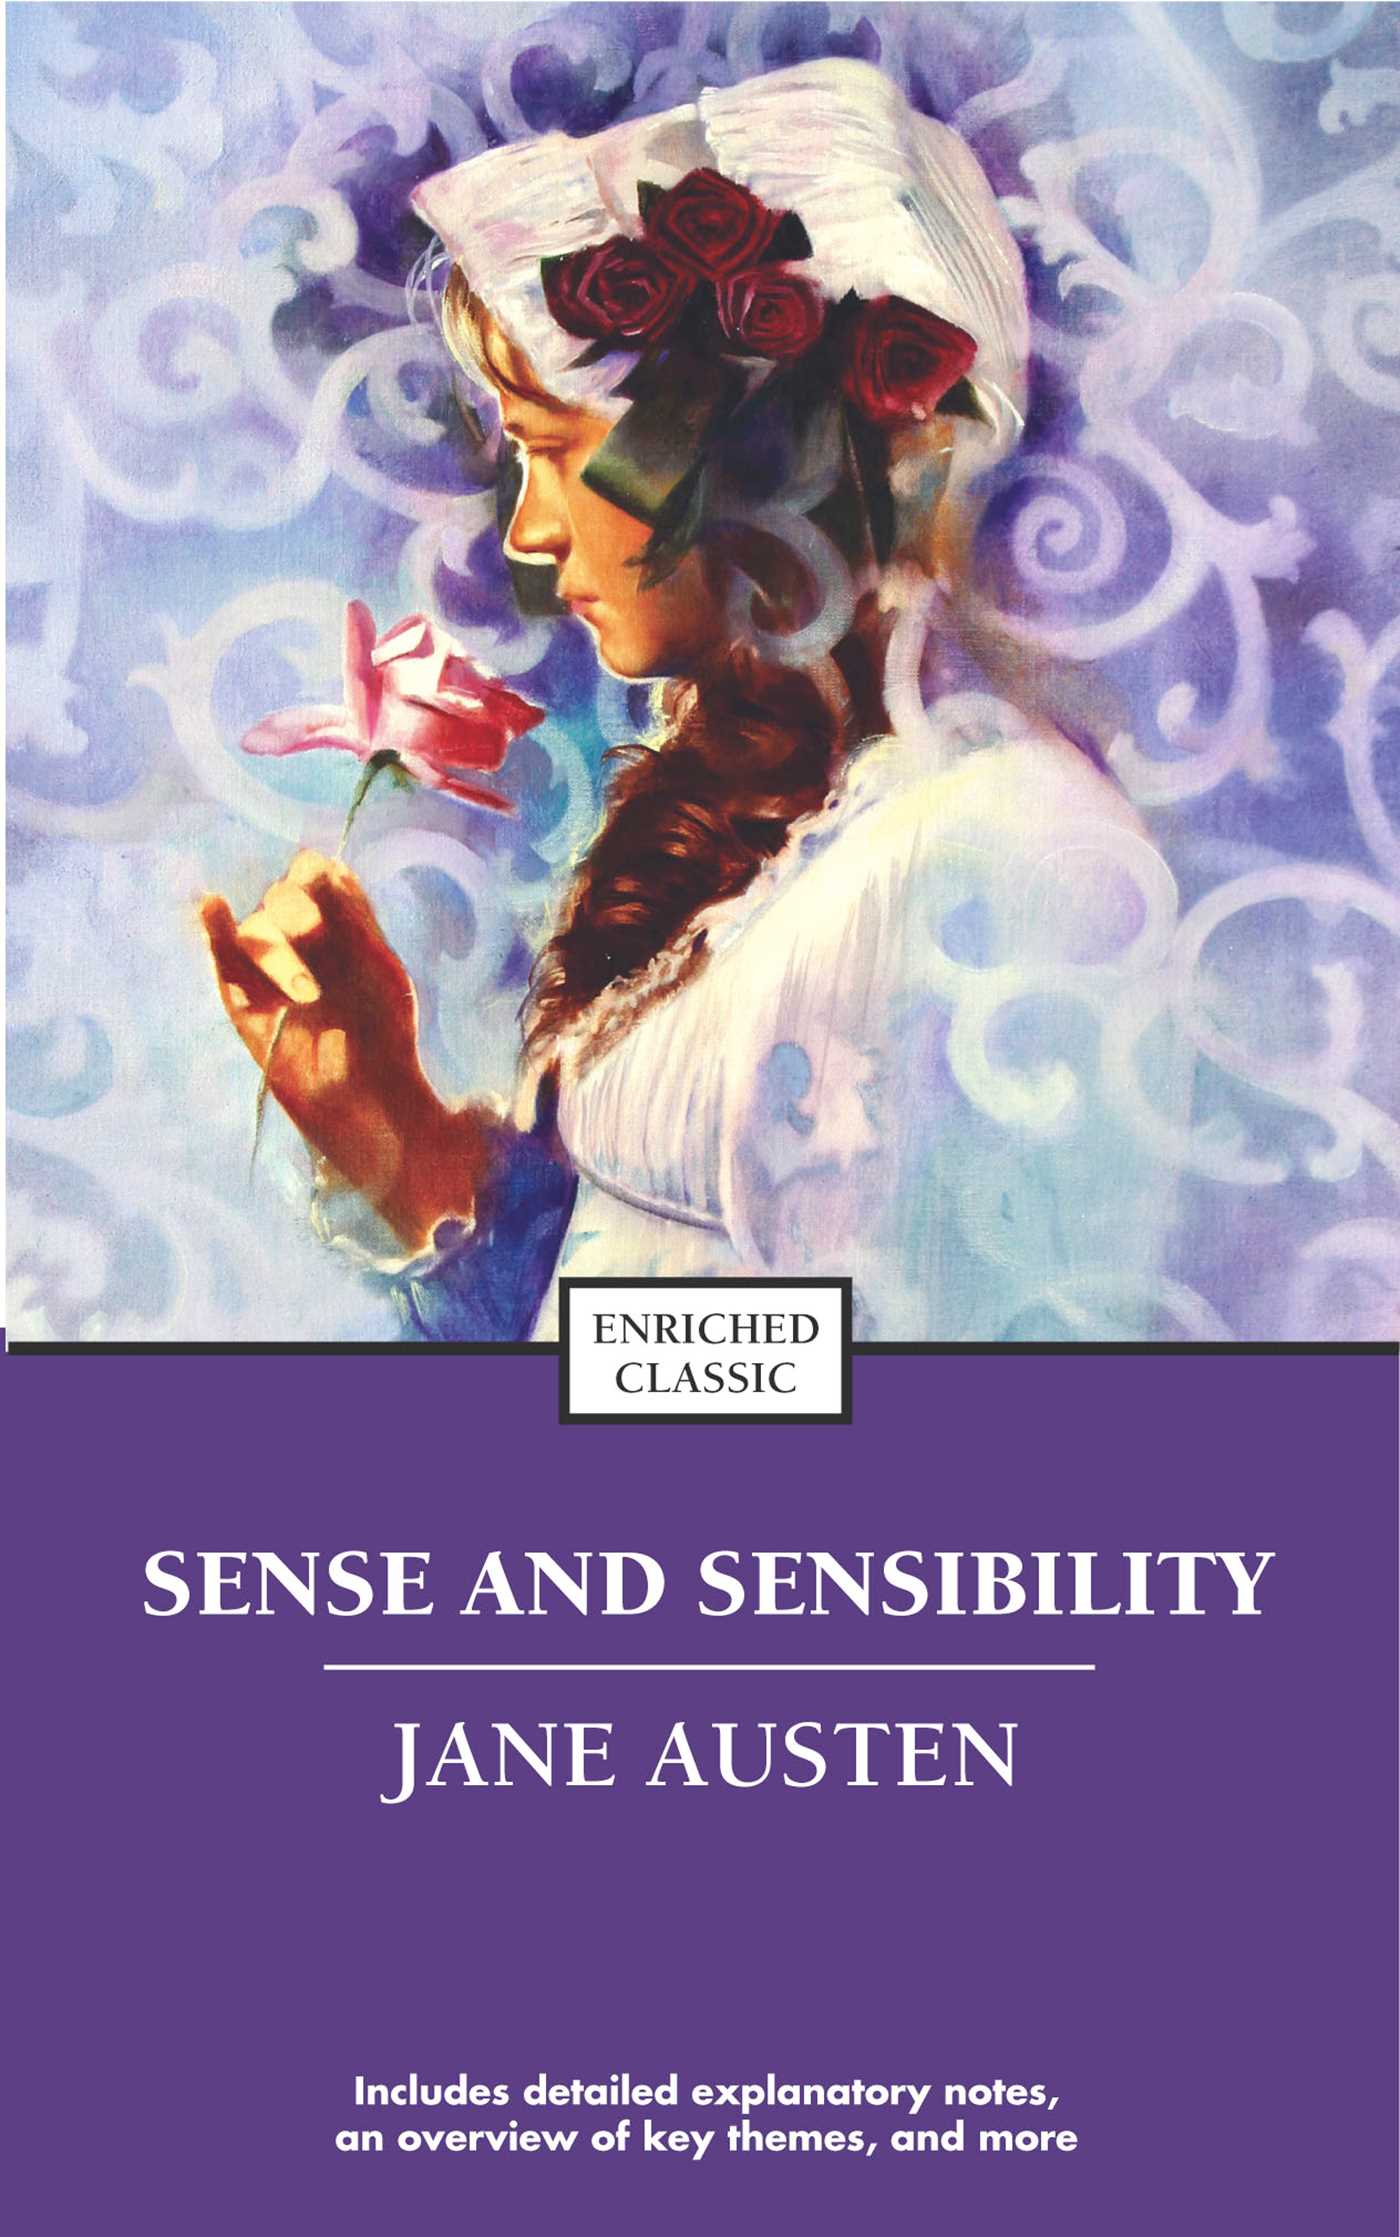 sense and sensibility by jane austen pdf free download